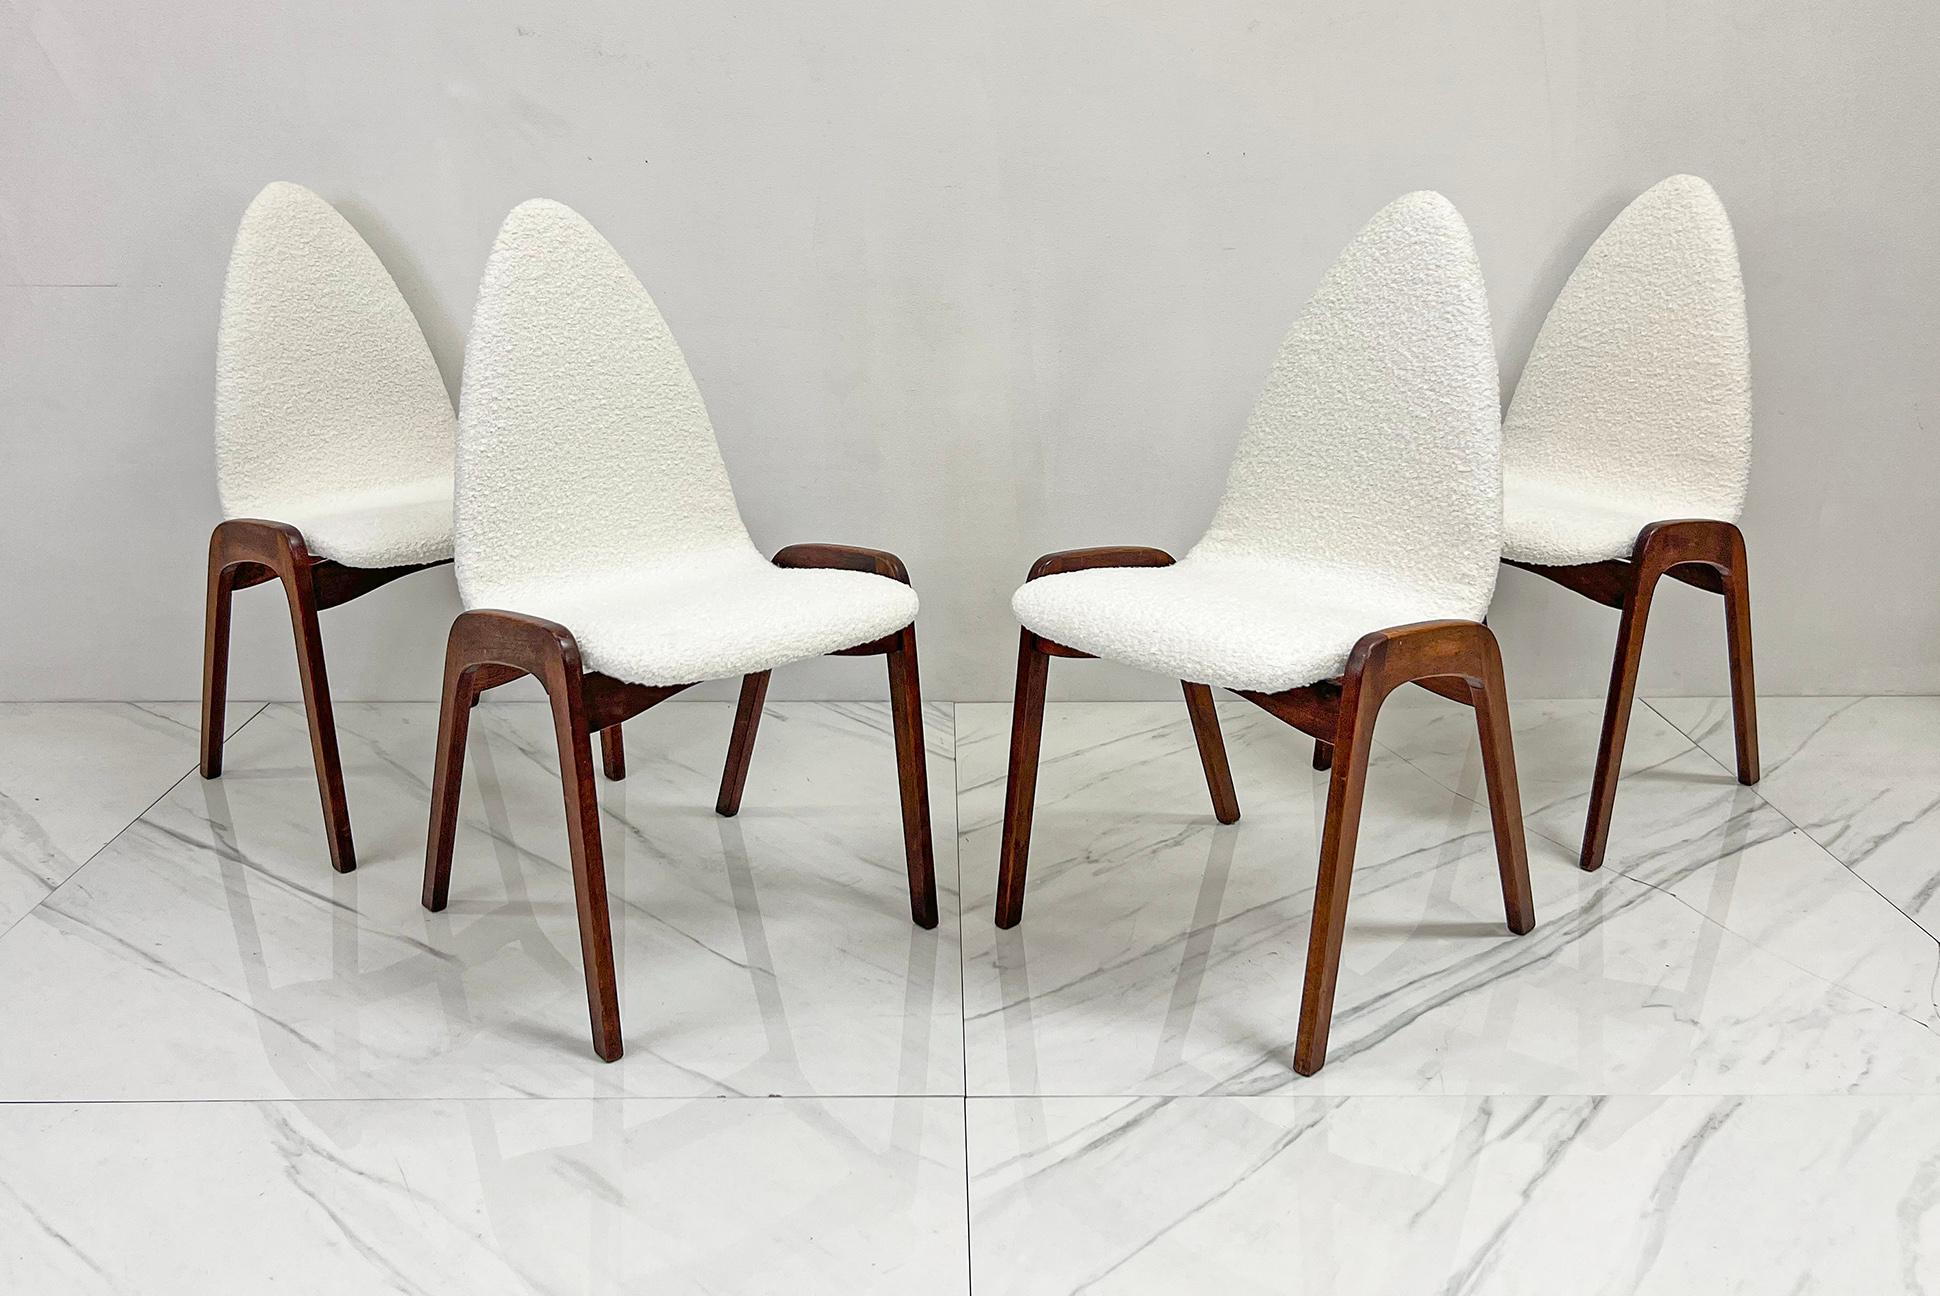 Disponible dès maintenant, cet ensemble de quatre chaises de salle à manger exquises conçues par l'énigmatique Chet Beardsley pour California Living Designs/One, ces merveilles du milieu du siècle renvoient aux sensibilités élégantes des années